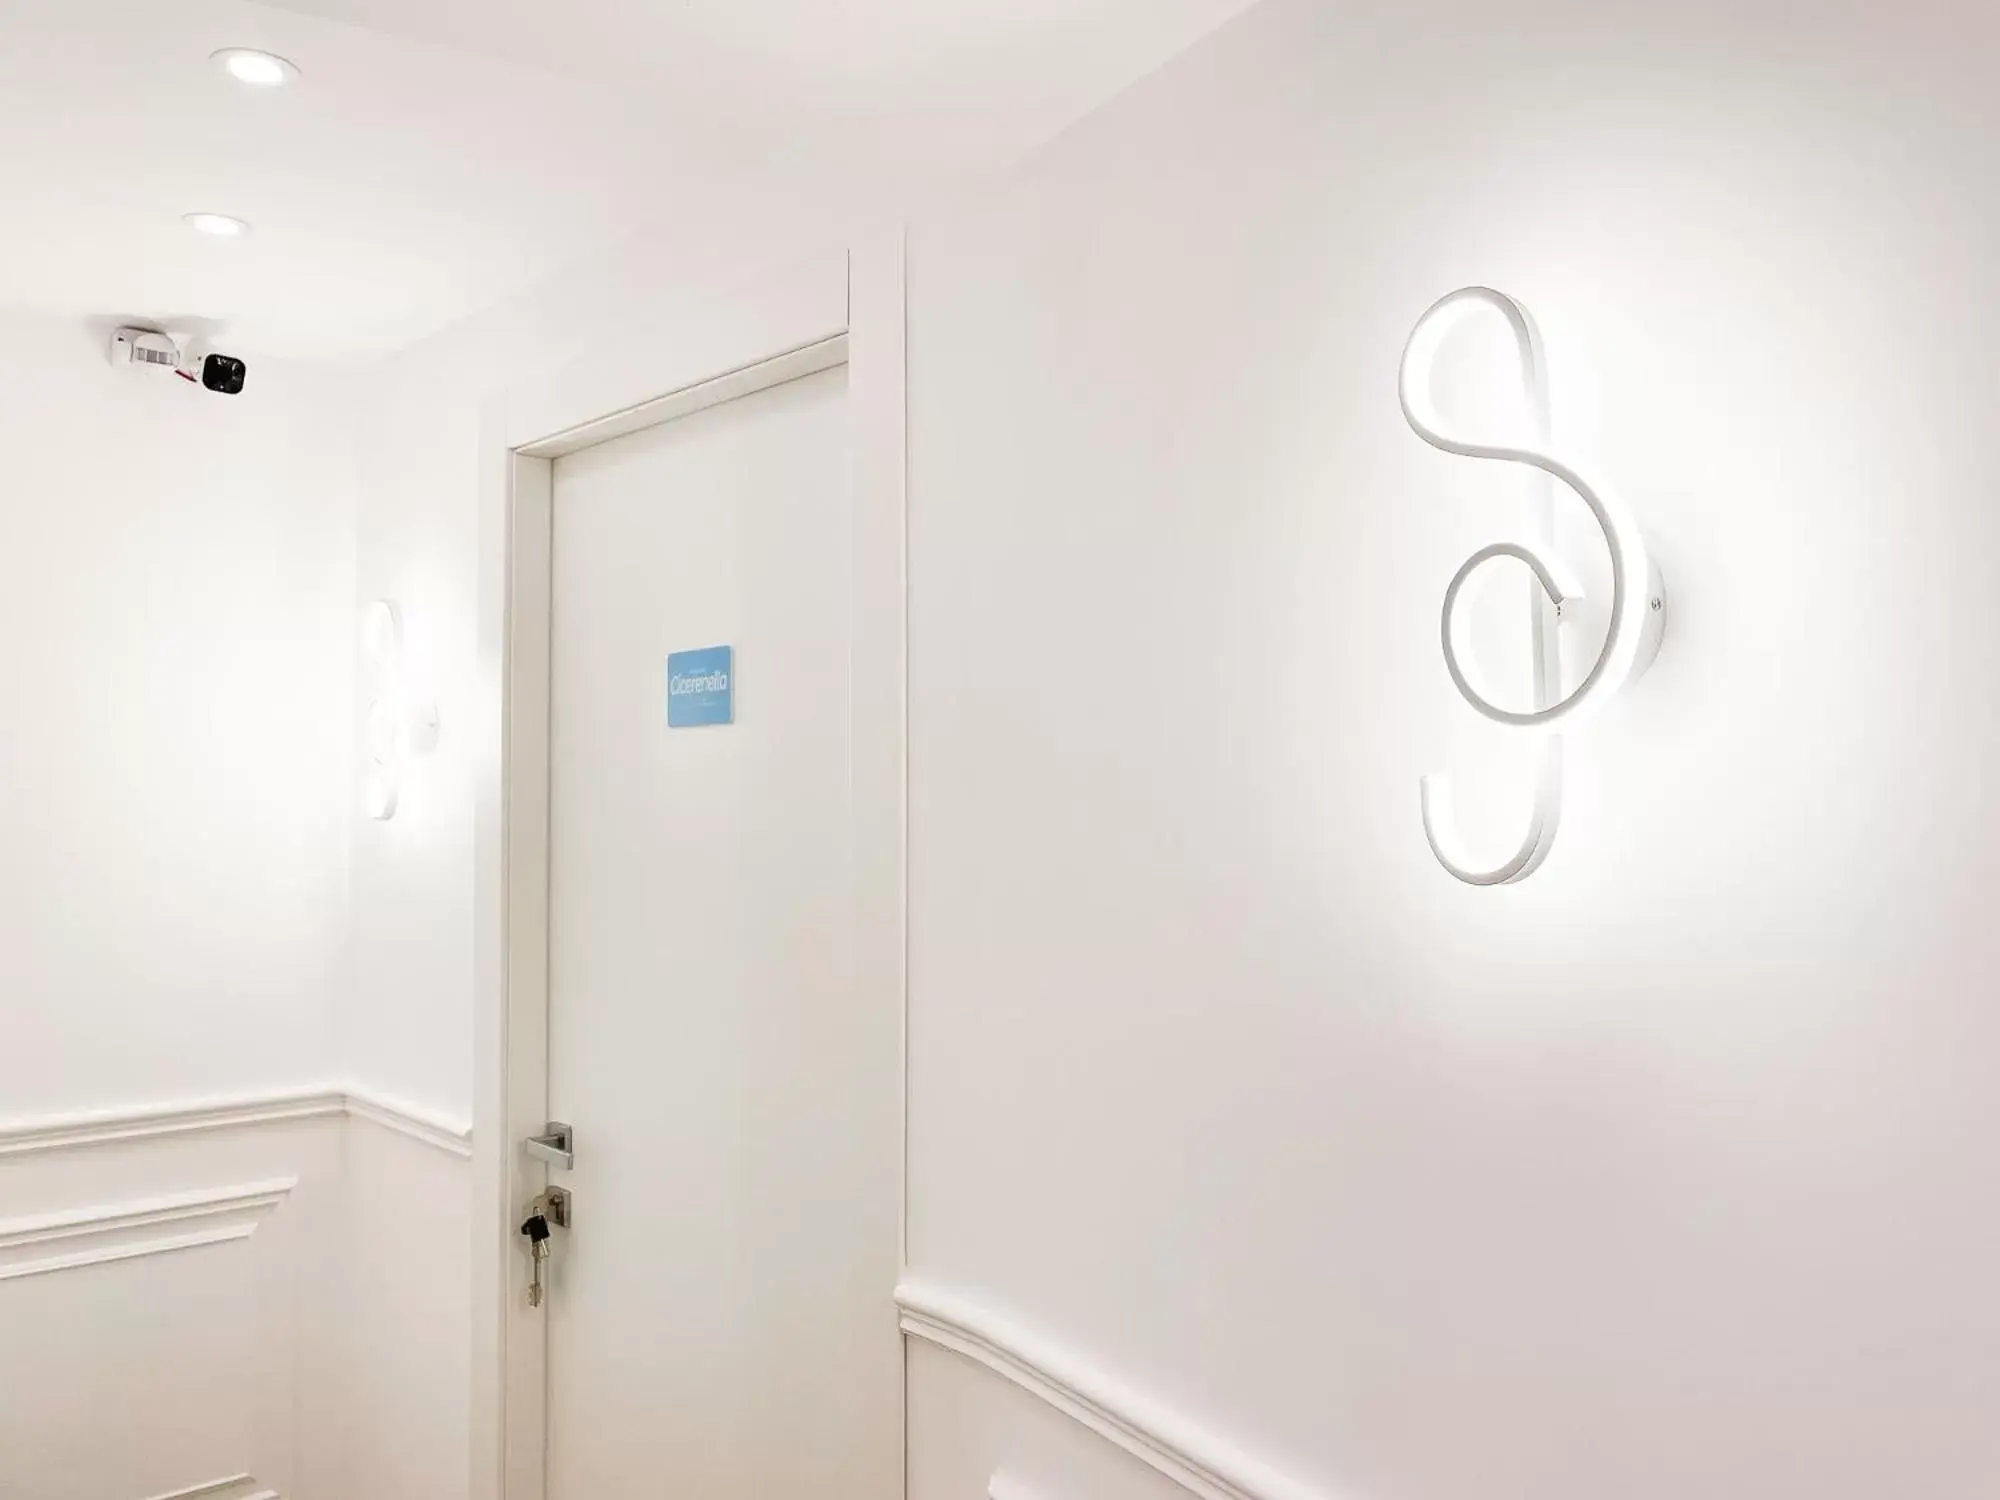 Lobby or reception, Bathroom in B&B La Canzonetta